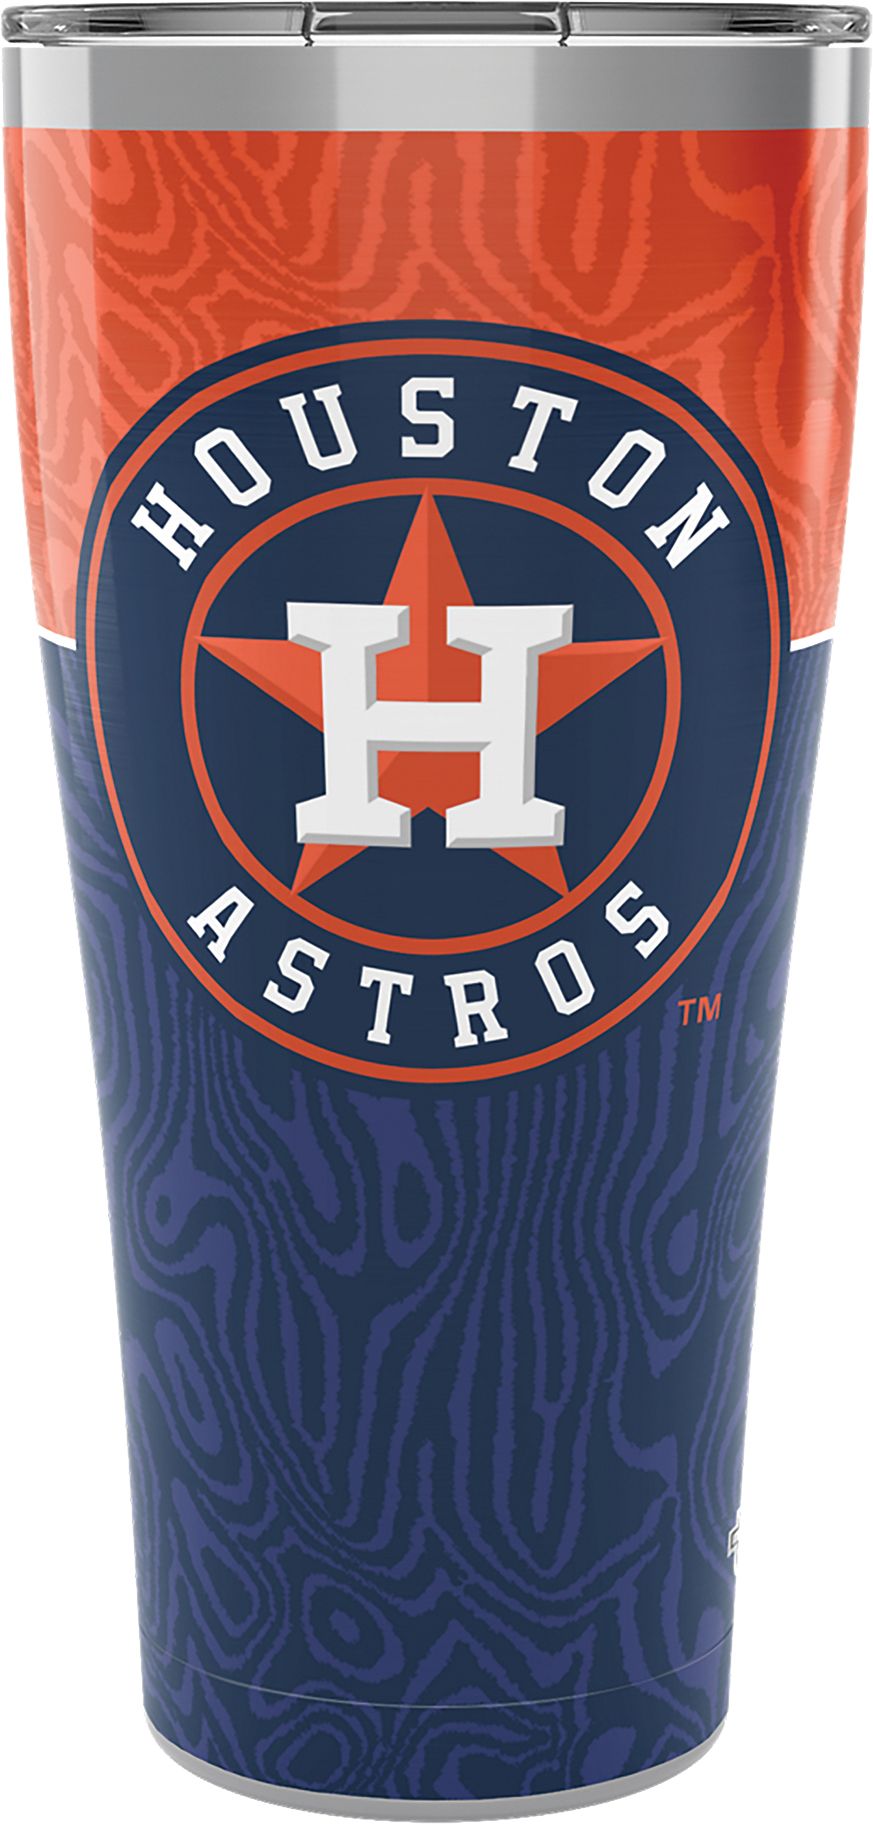 Tervis Houston Astros 16 oz. Tumbler